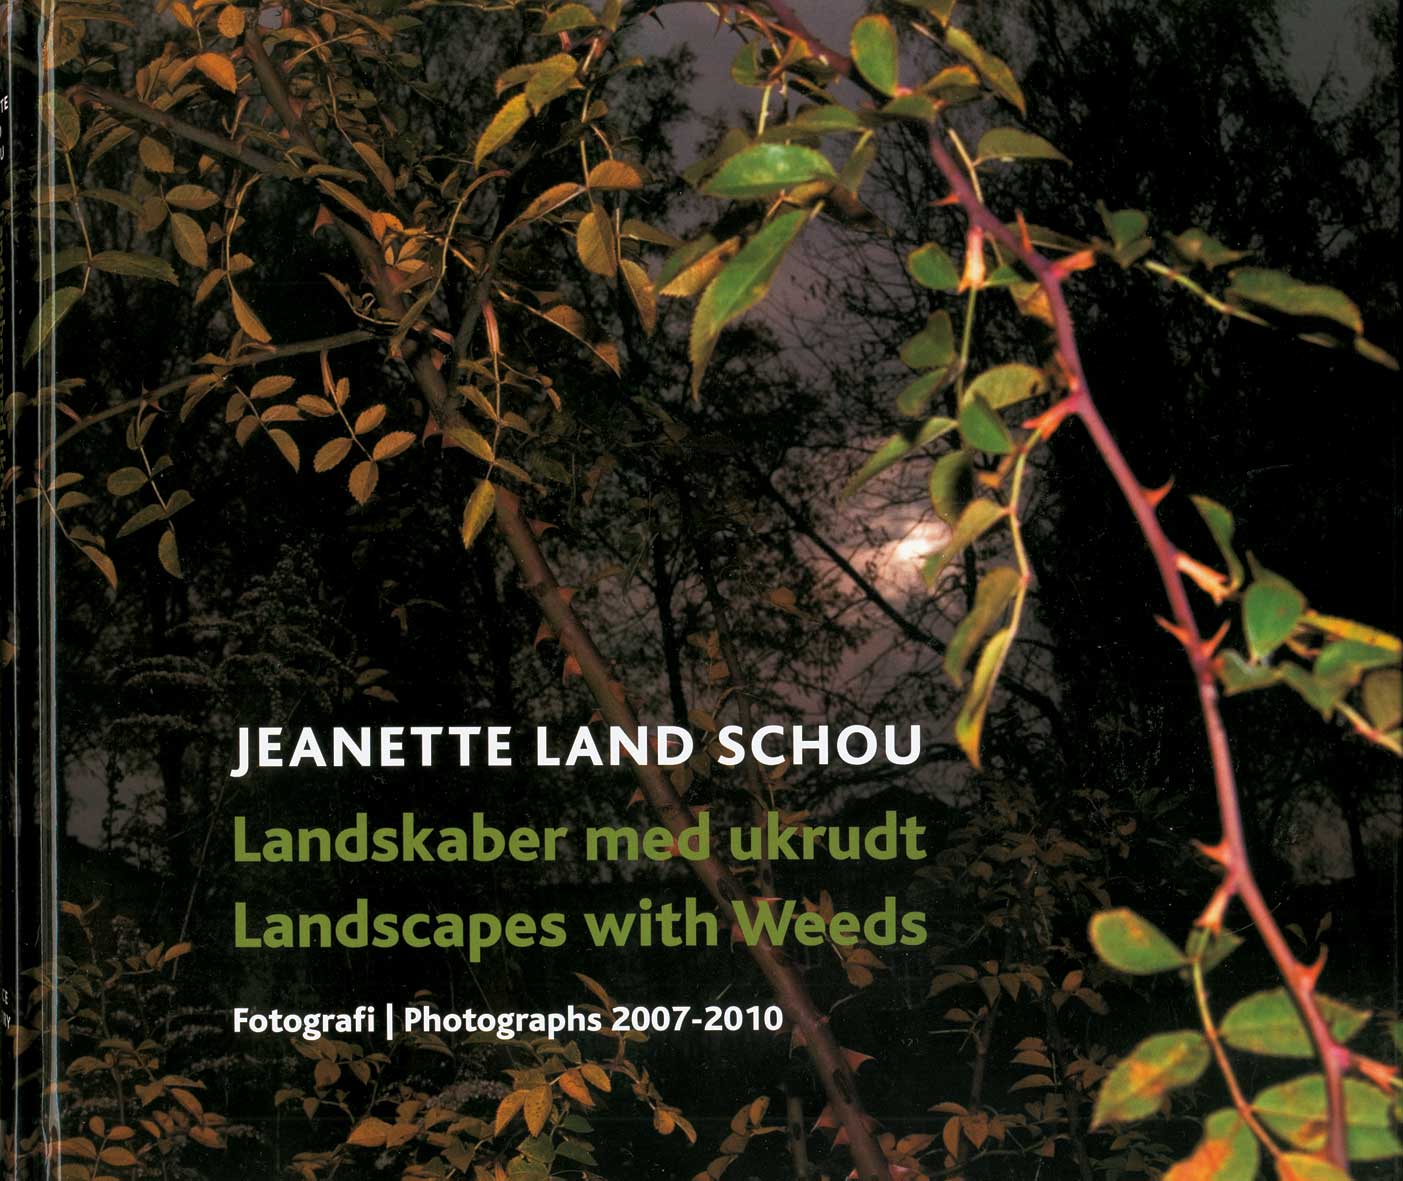 Landskaber Med Ukrudt/Landscapes With Weeds